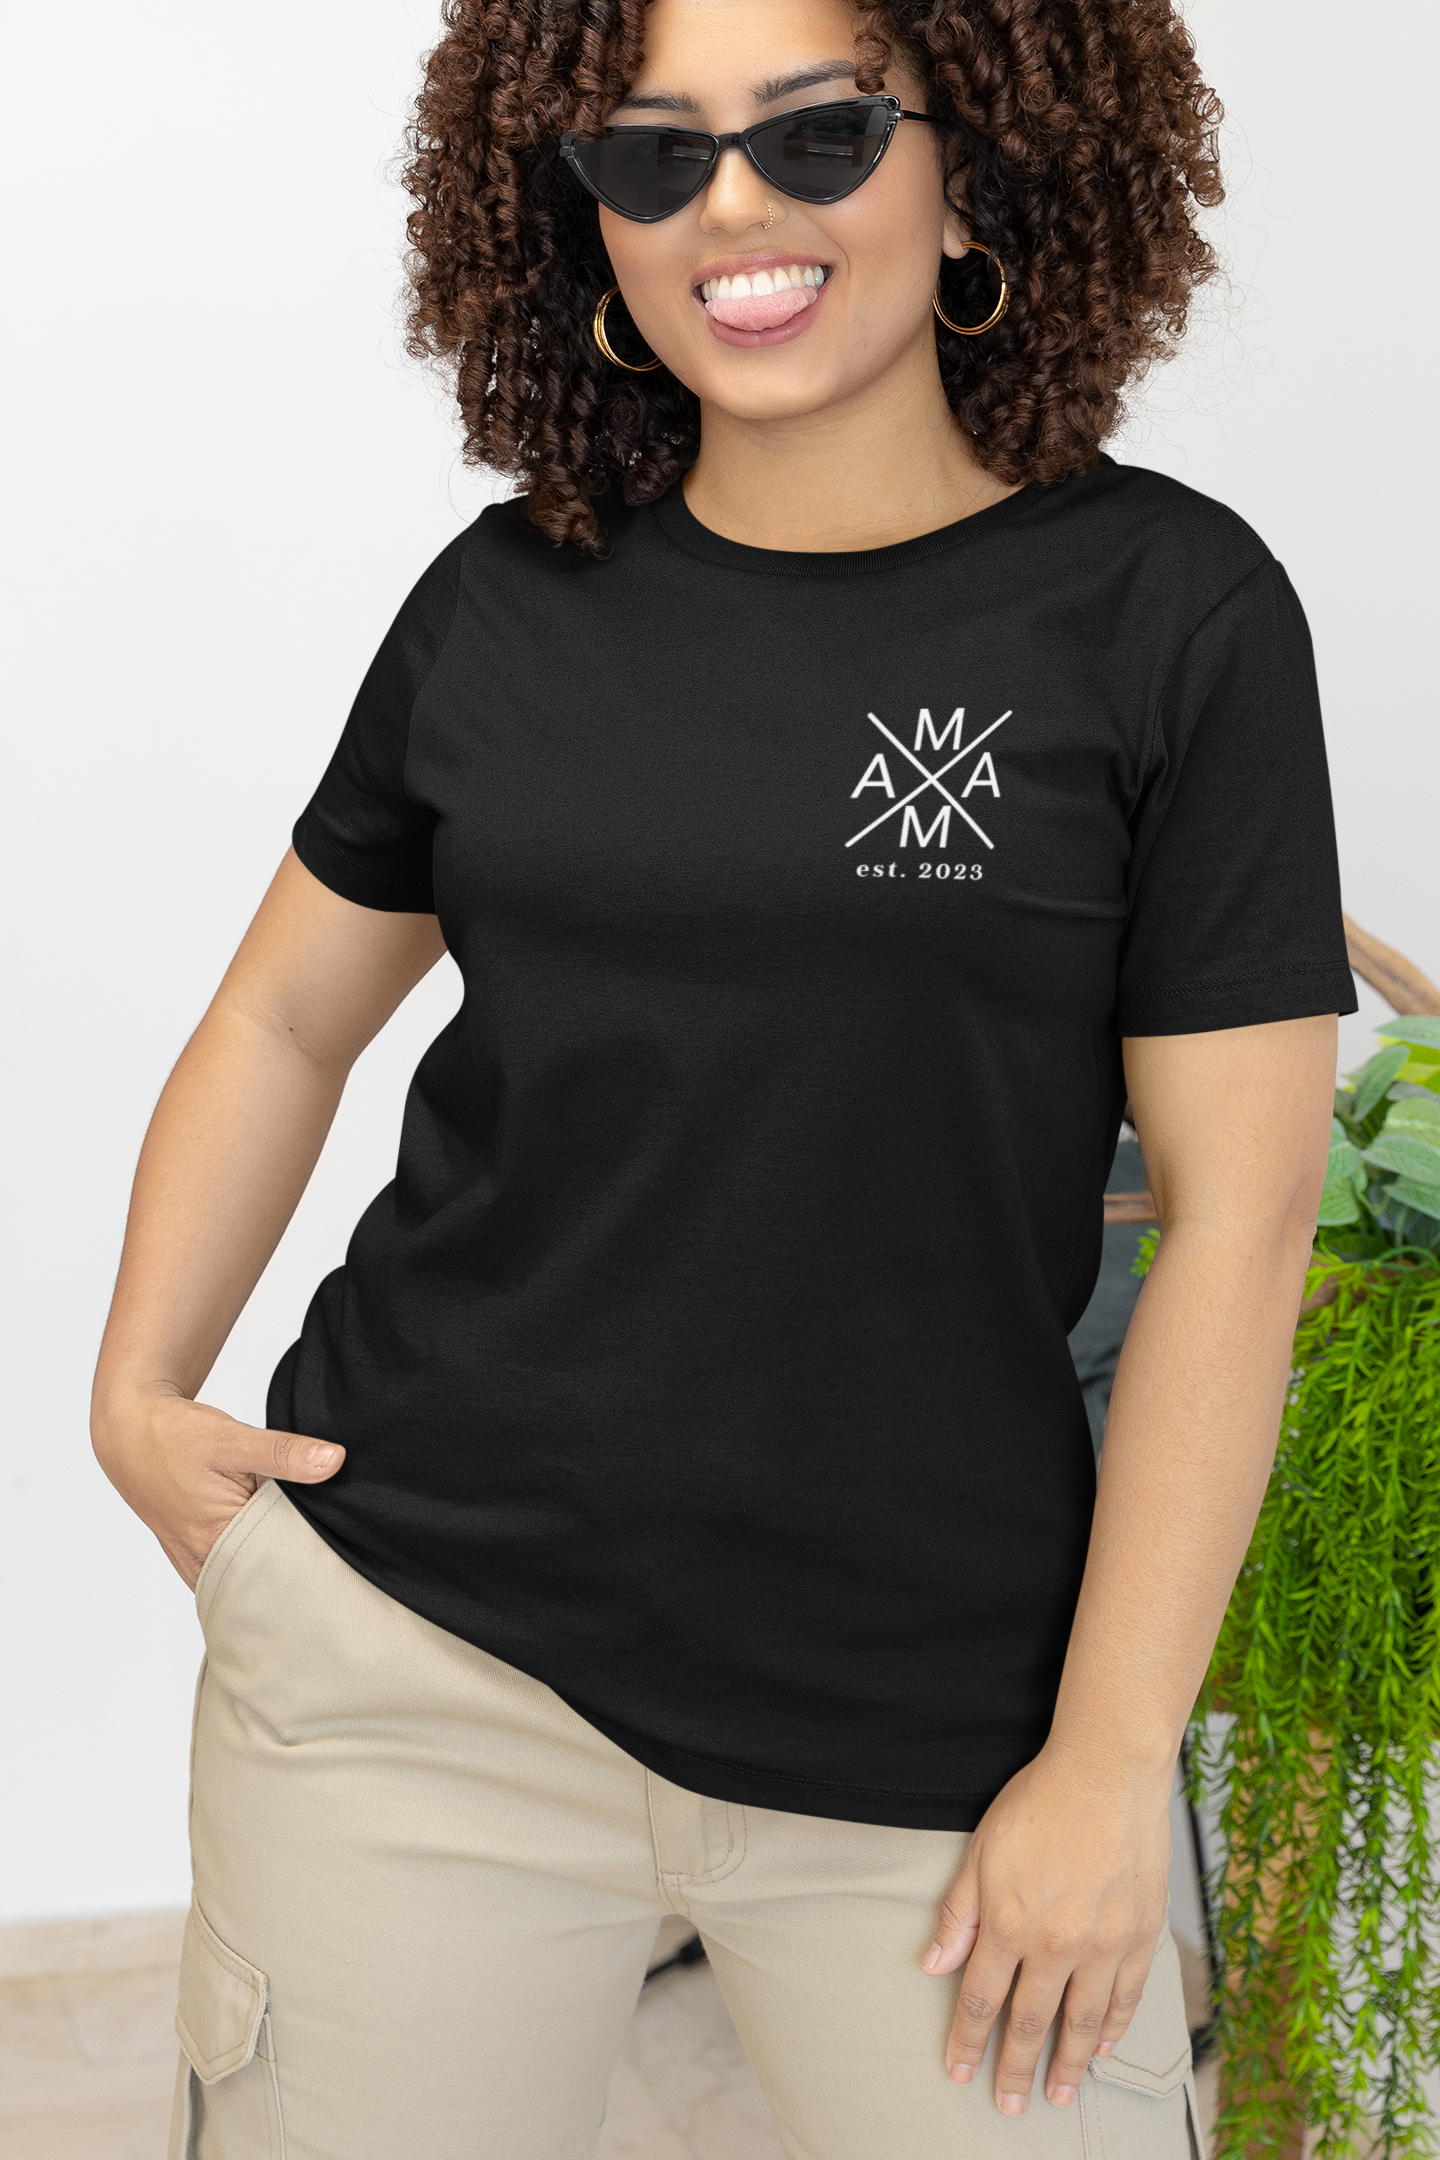 T-Shirt Motiv Mama est. 2023 - Ladies Premium